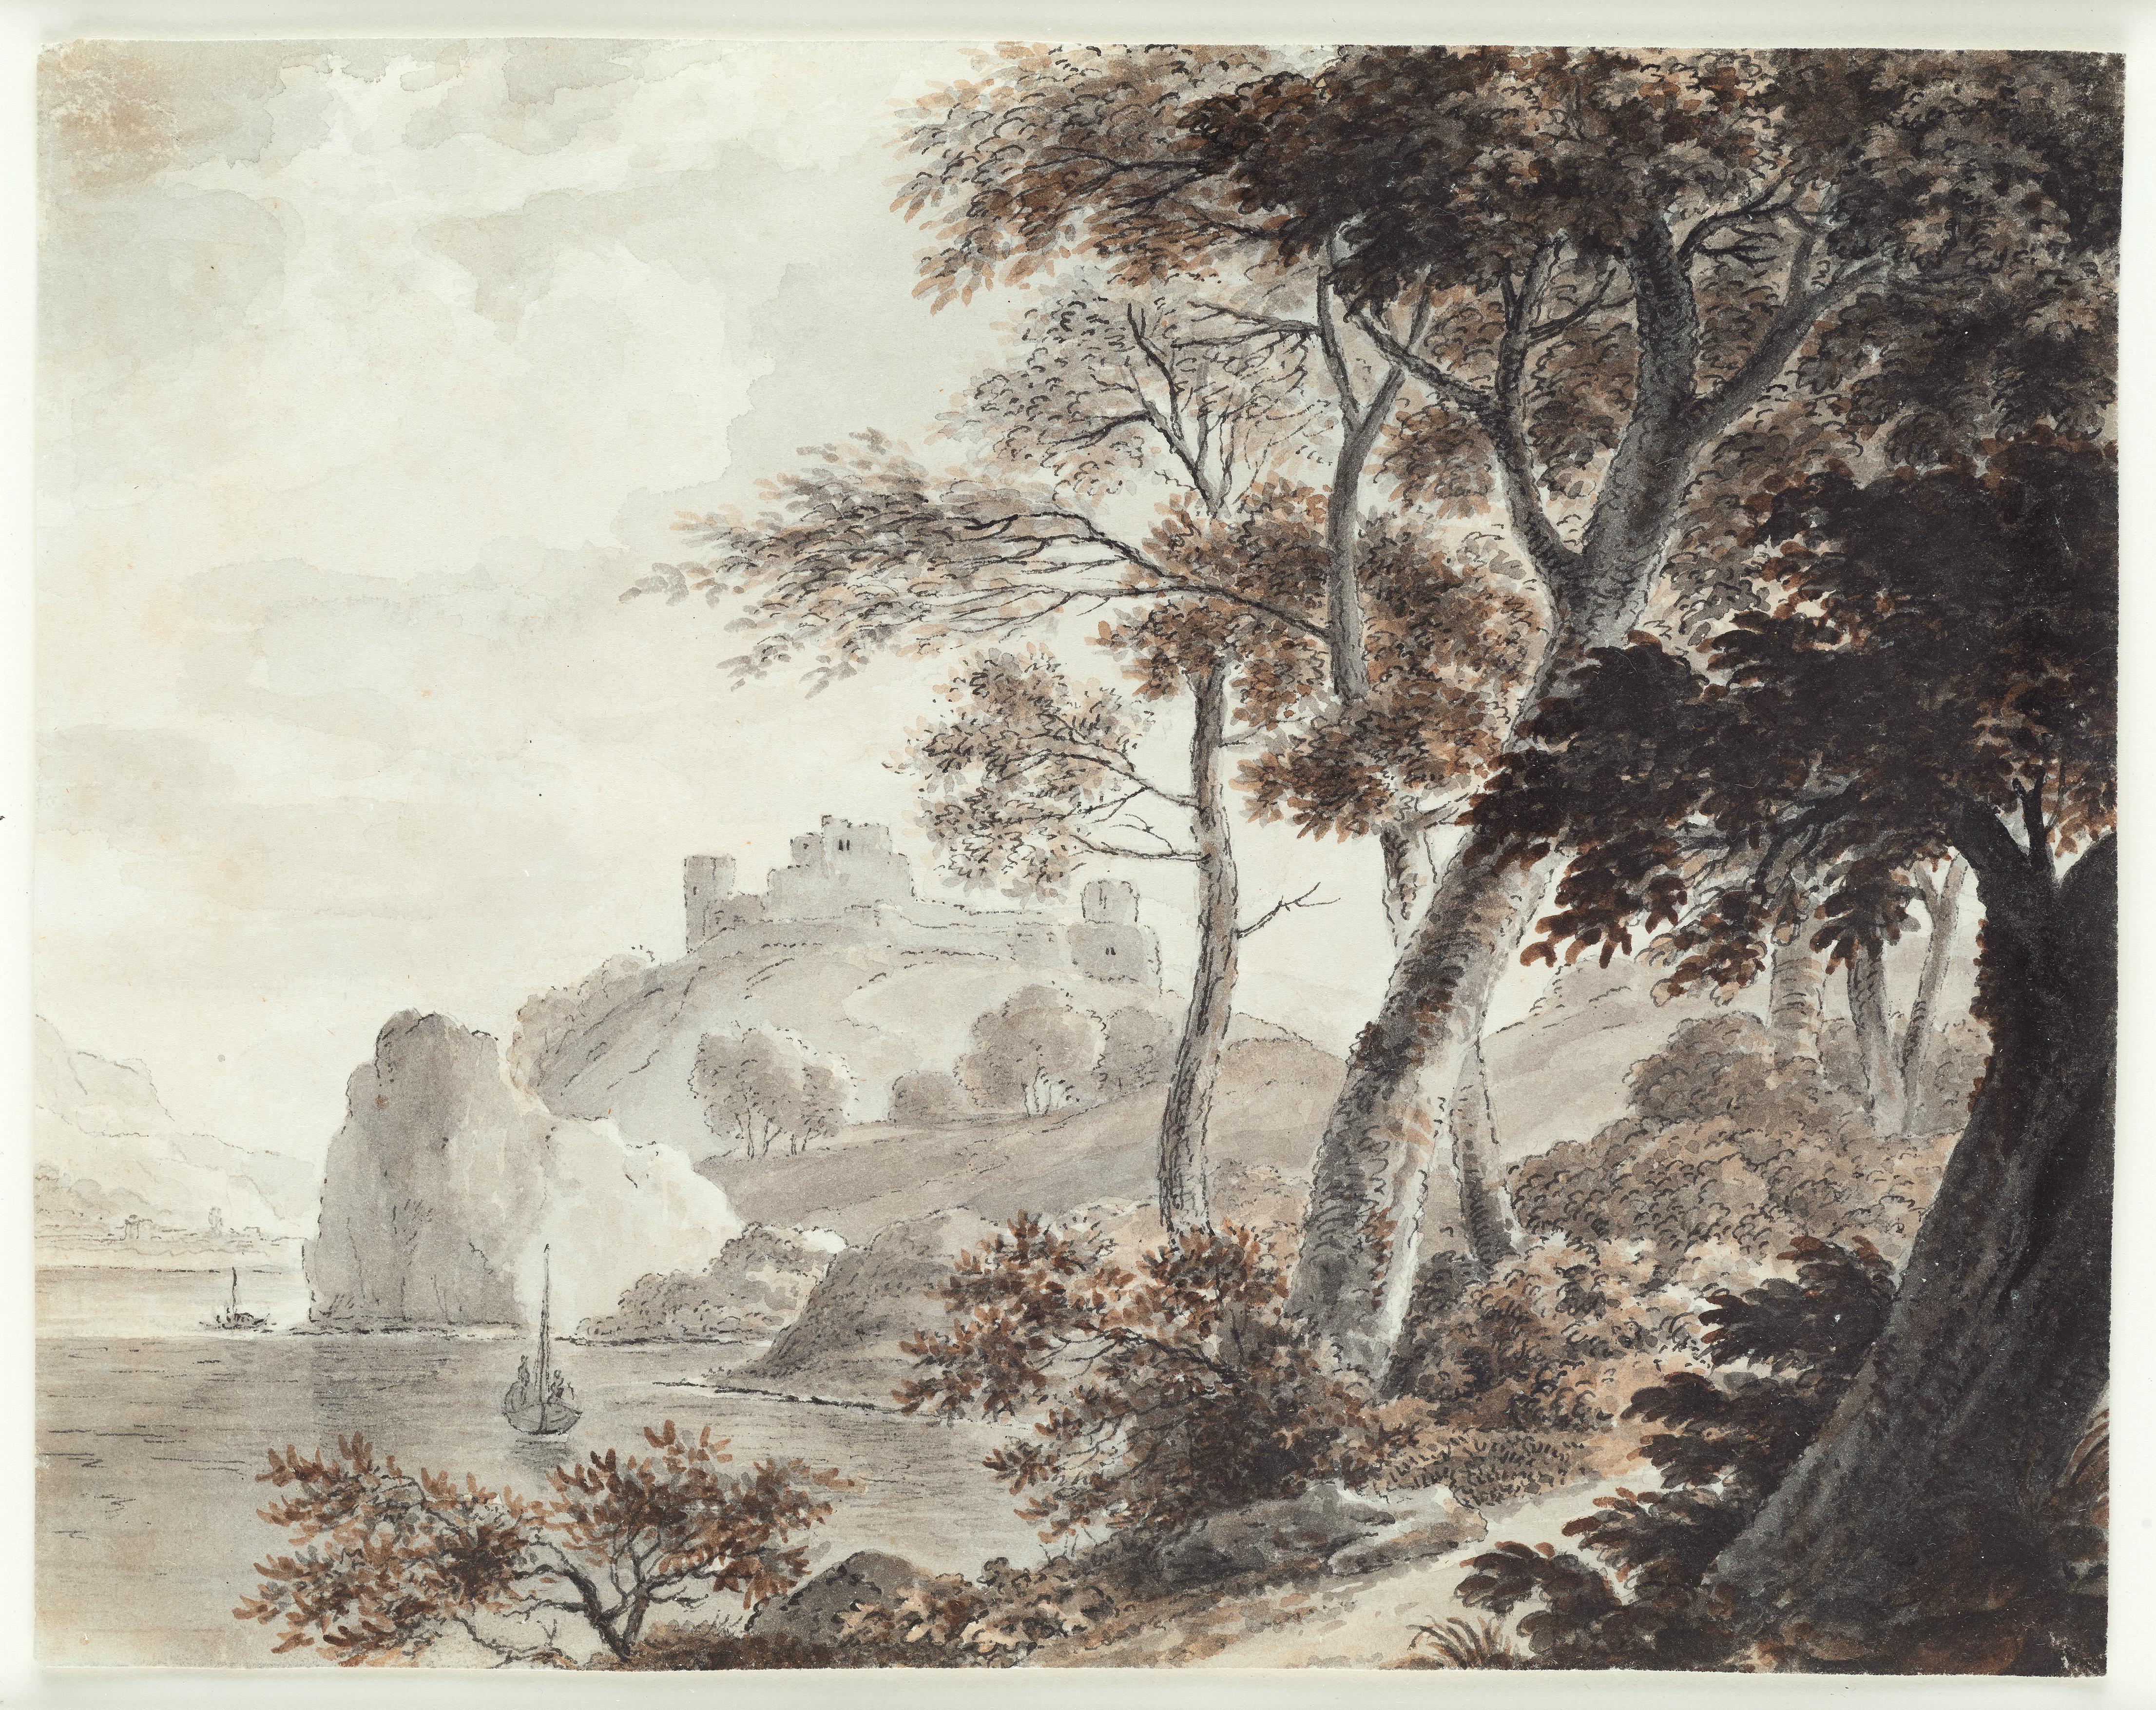 Südstaatliche Landschaft, Schiffe, Zeichnung eines alten Meisters, 19. Jahrhundert, von Von Stengel